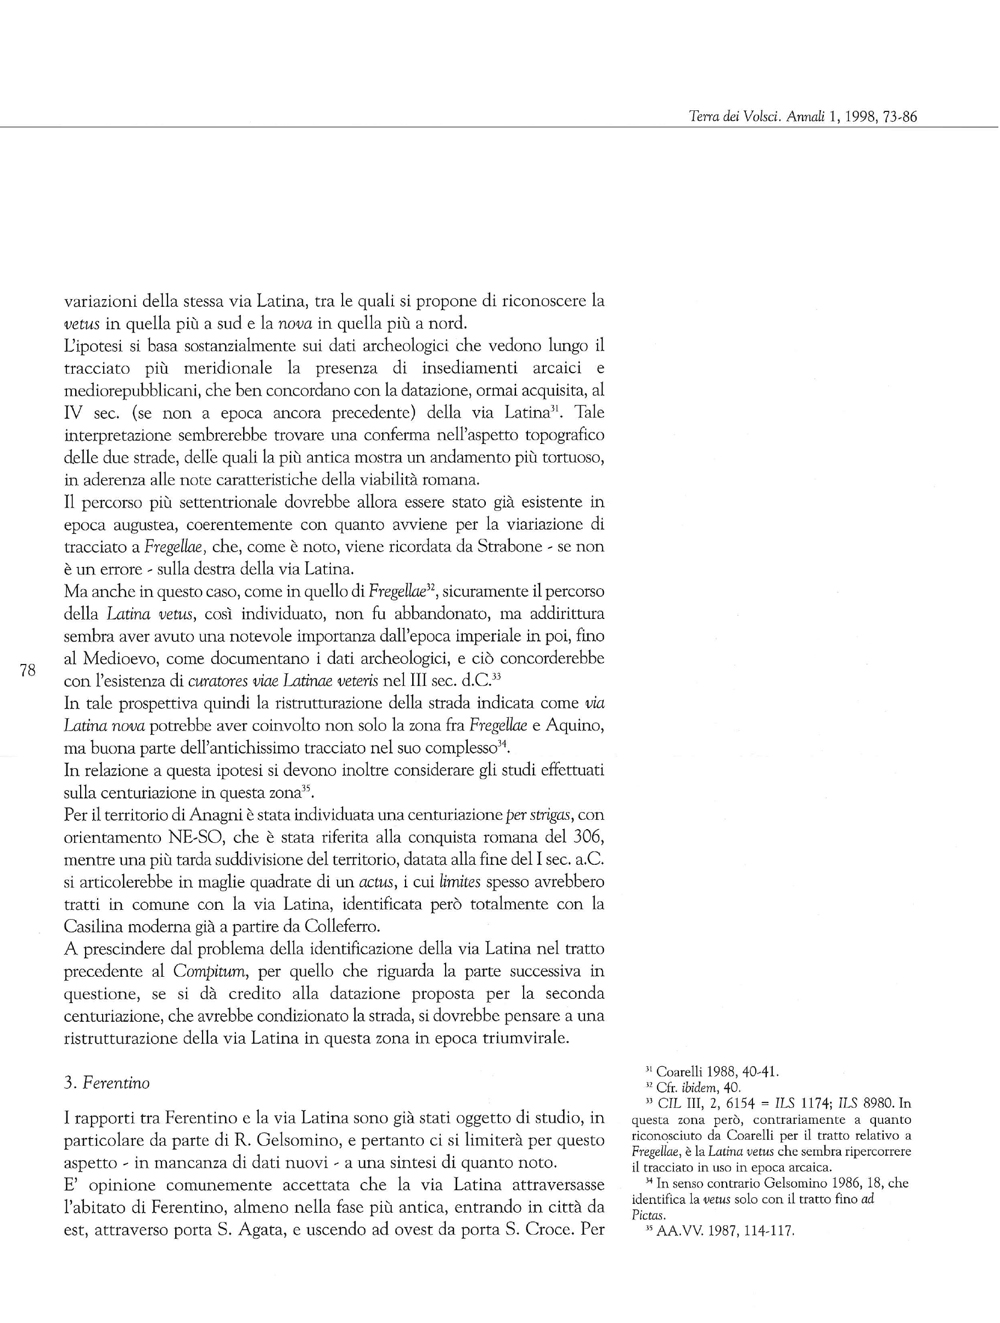 Terra dei Volsci. Annali del Museo Archeologico di Frosinone, 1998, 1, Sandra Gatti